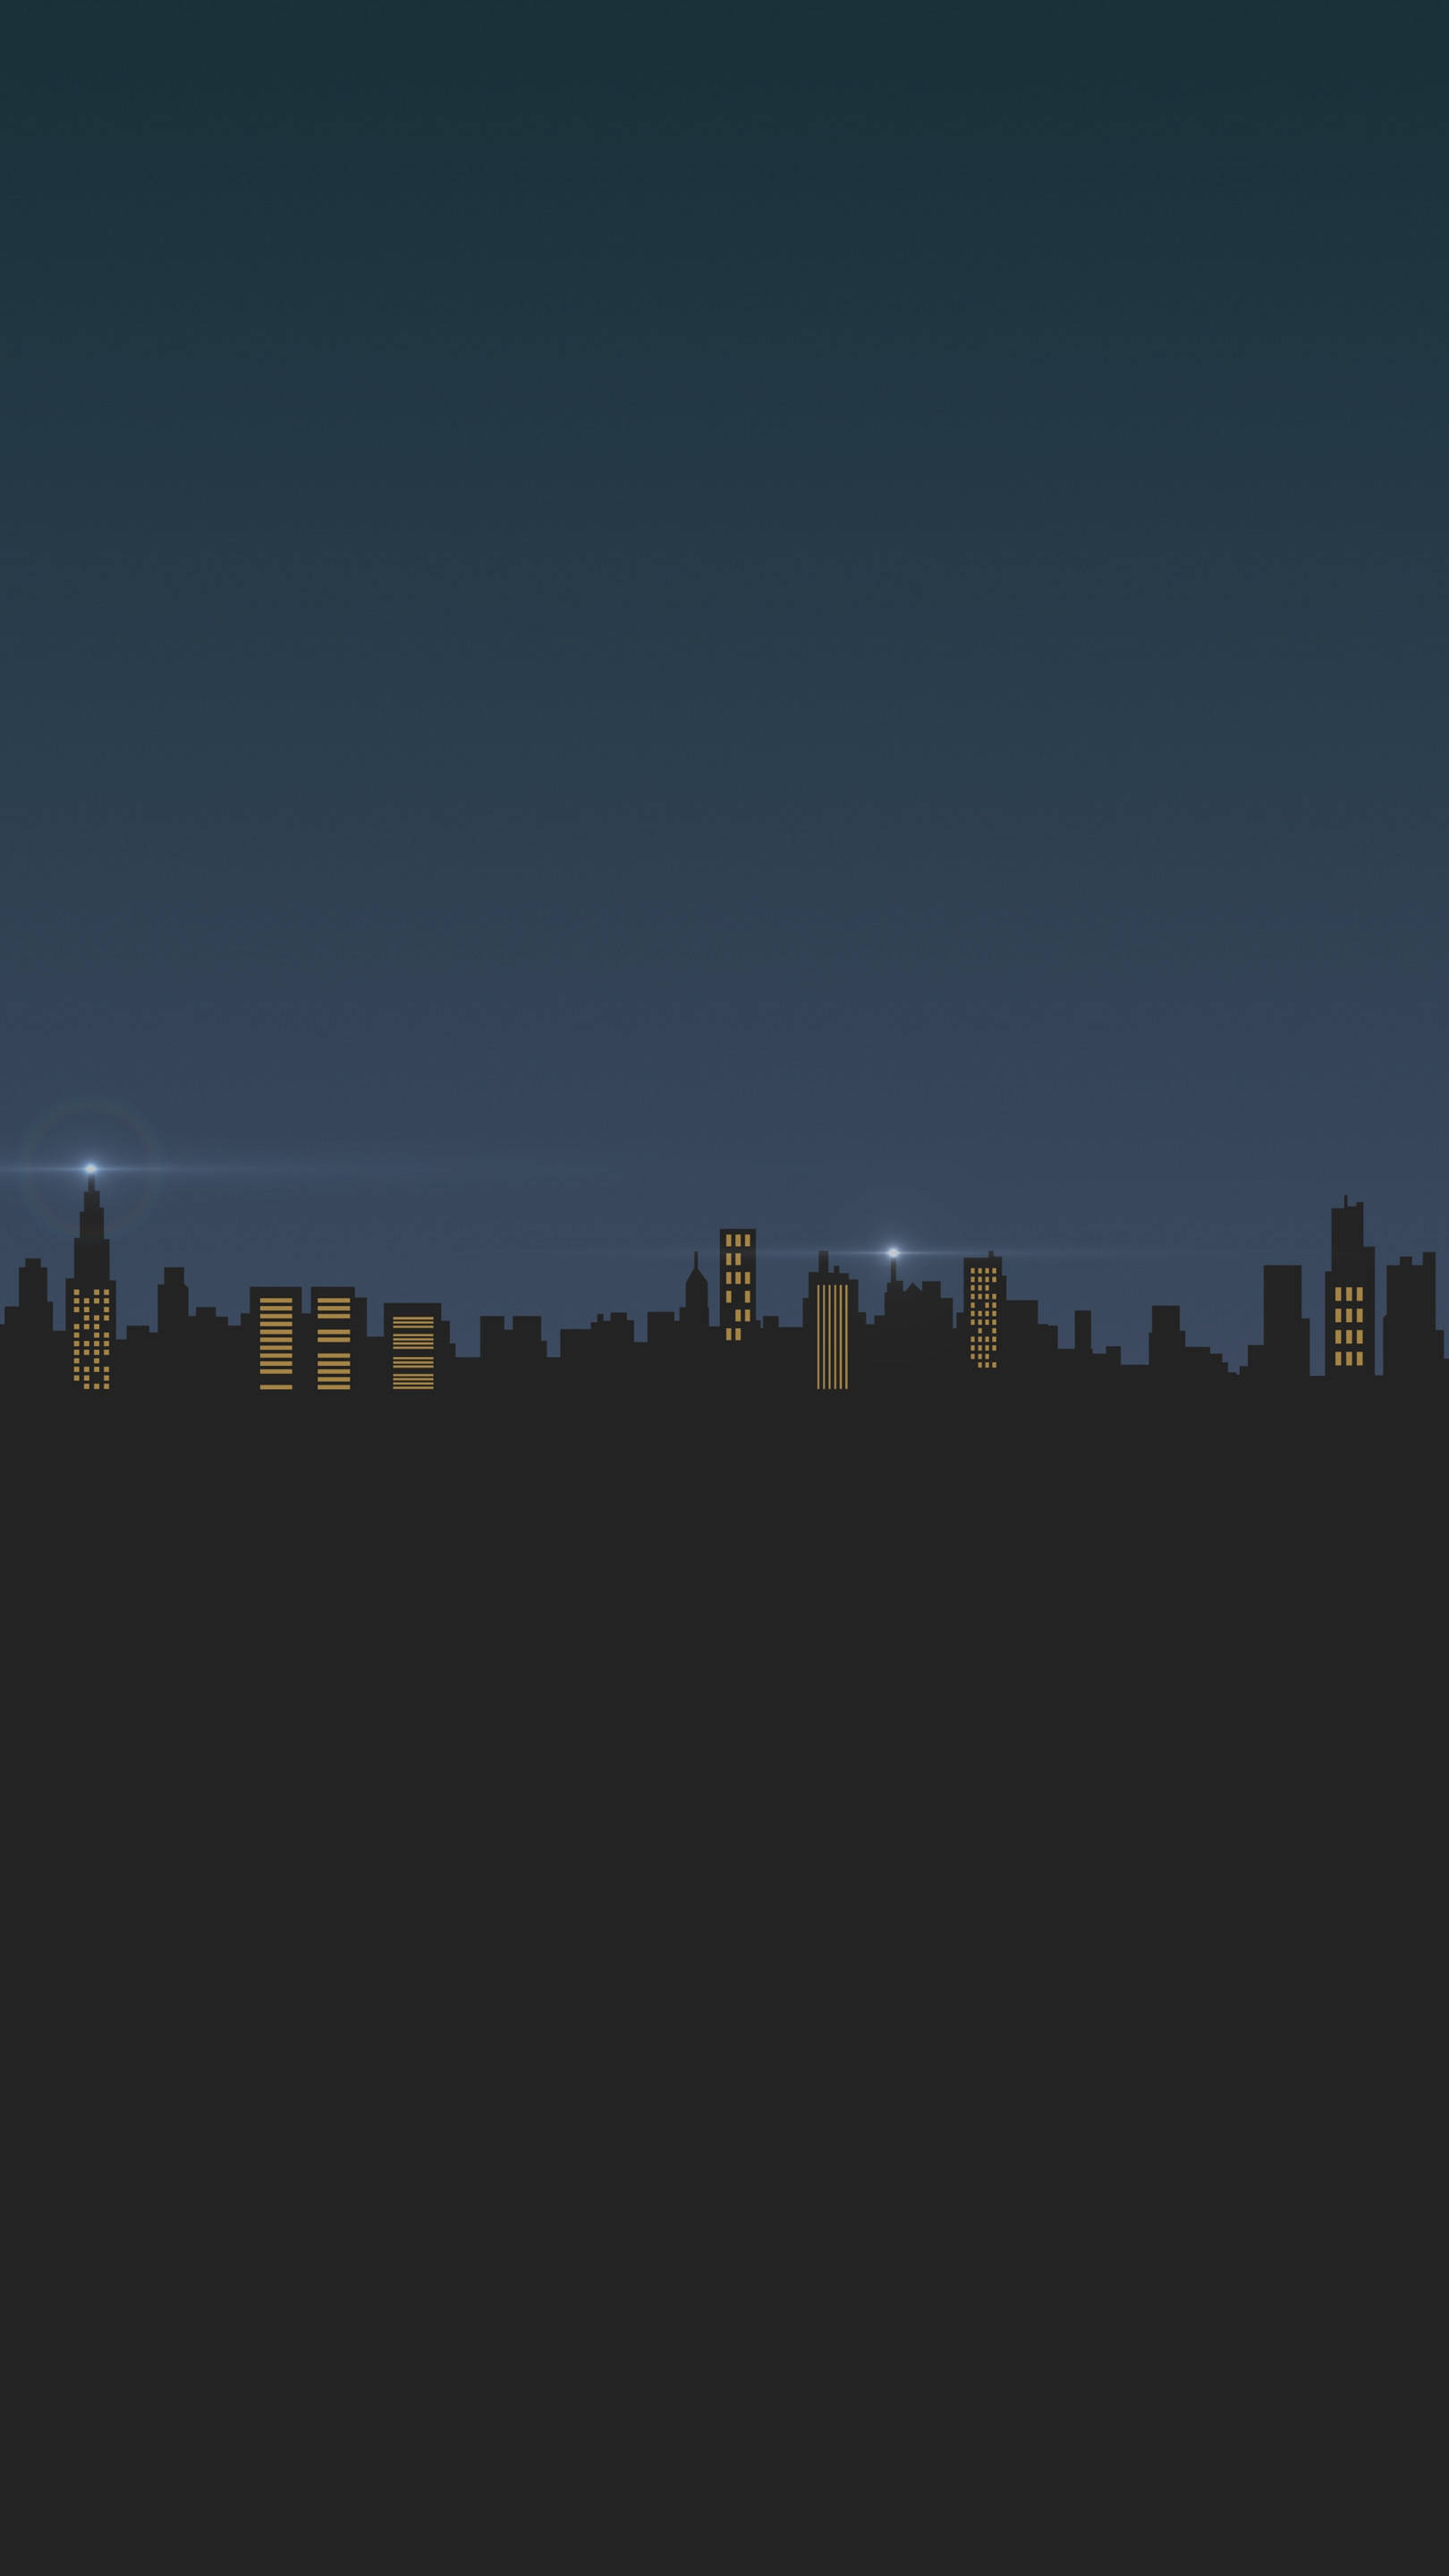 силуэт городского пейзажа минималистичный темный iphone